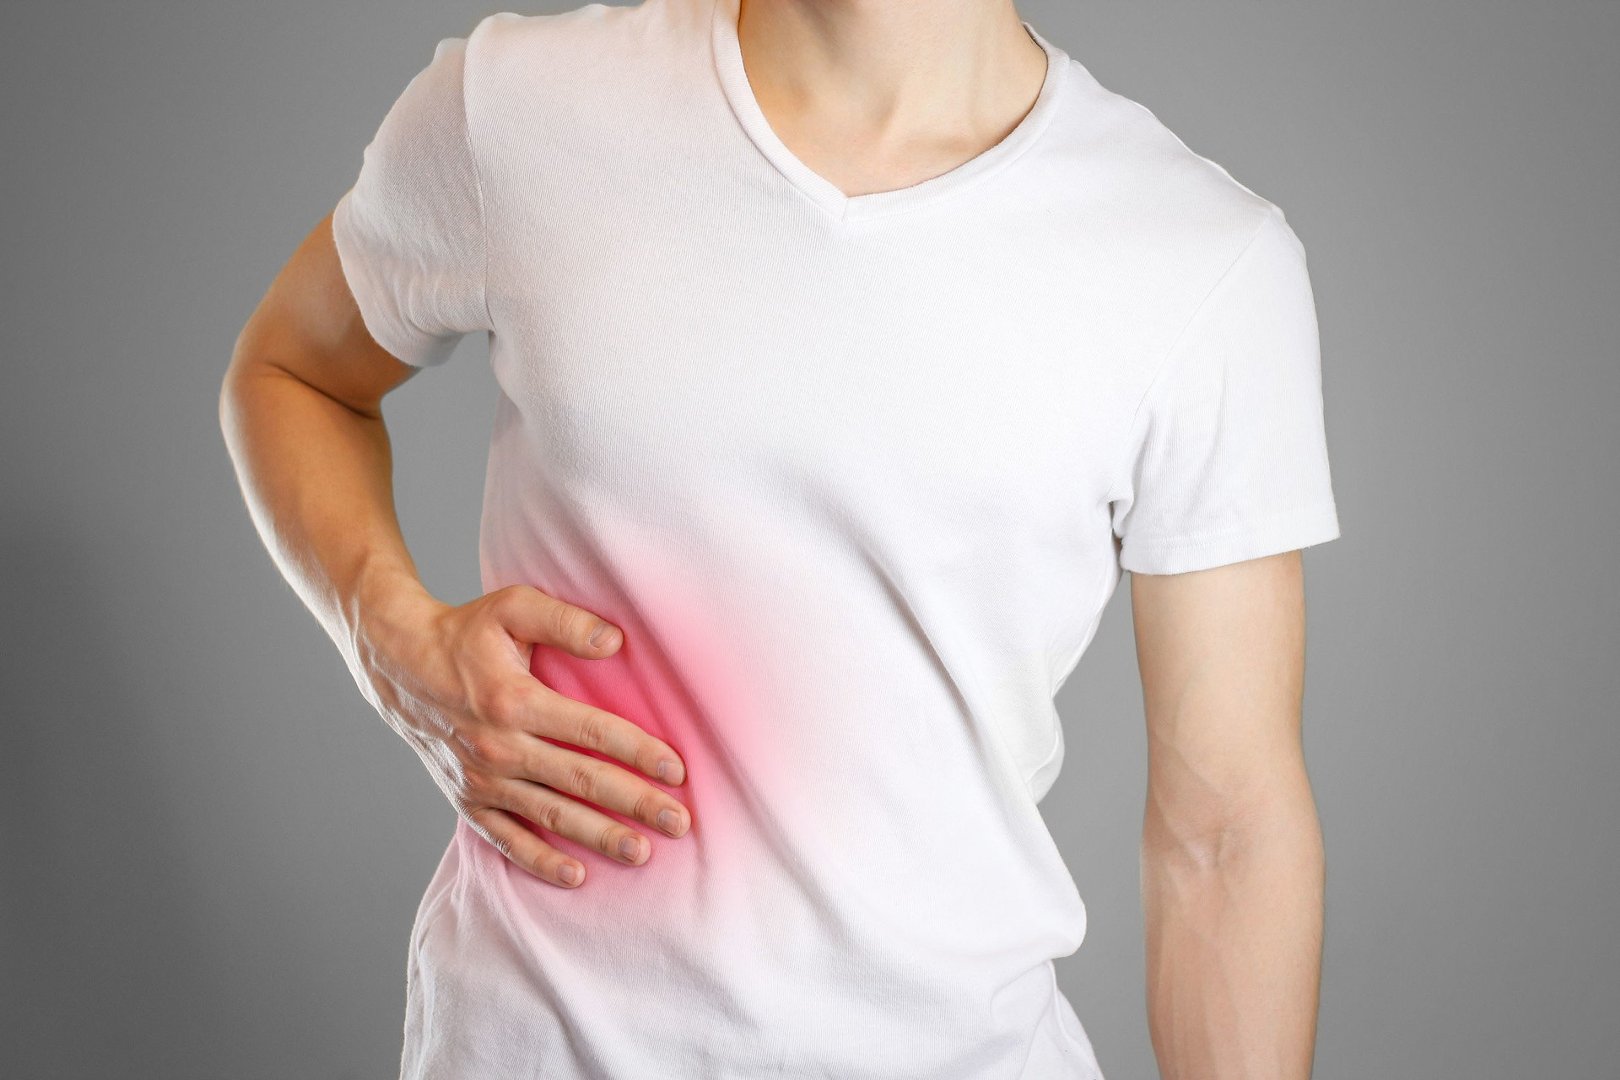 Ból w prawym boku – co może oznaczać kłucie i tępy ból po prawej stronie  brzucha, pod żebrami oraz promieniujący do pleców? | Strona Zdrowia